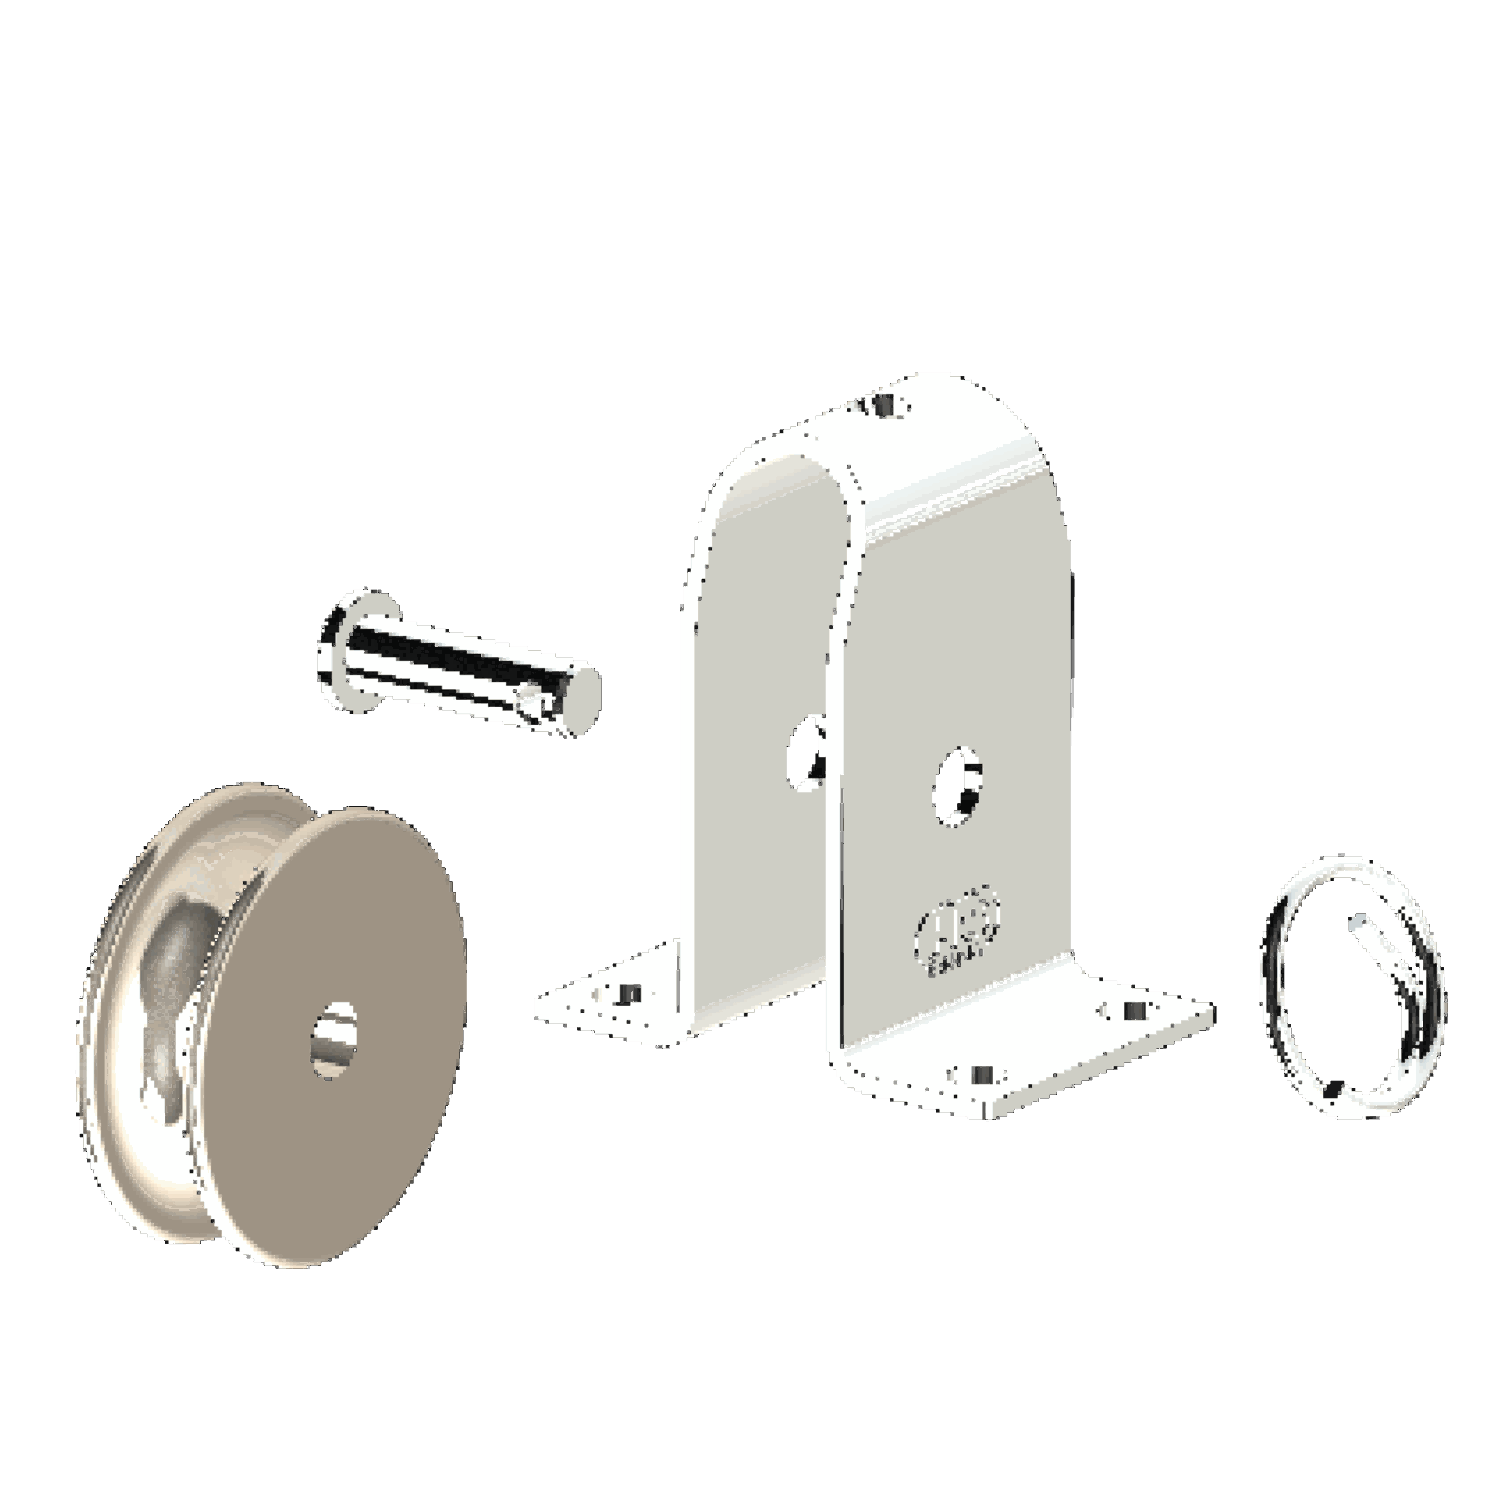 Stehblock für Draht Gleitlager 6 mm - 1 Rolle | 35111001553.png | 1700897657